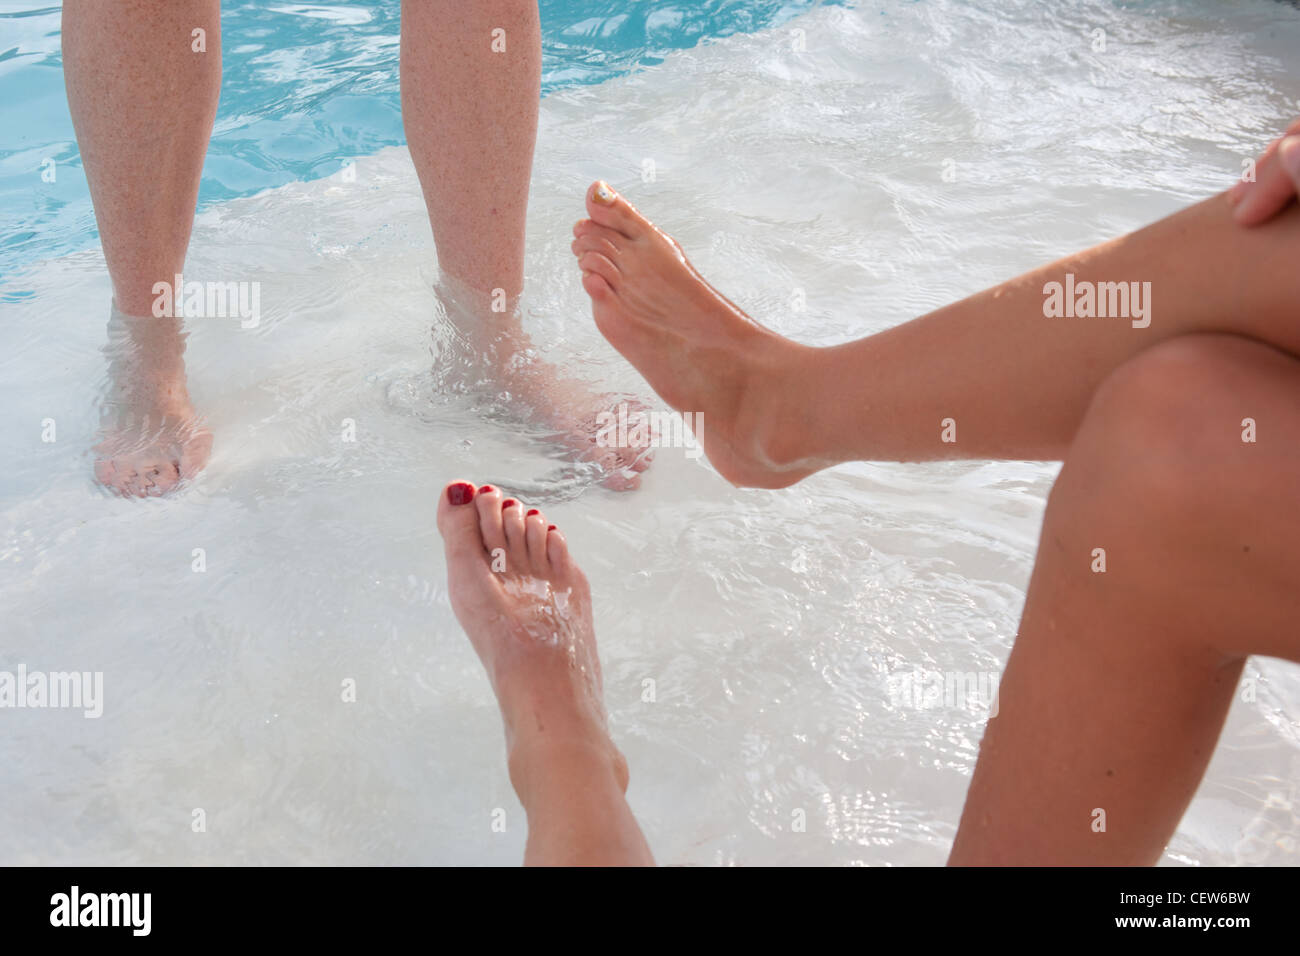 Les jambes et les pieds et près de l'eau des piscines. Trois personnes profitant de la piscine. Banque D'Images